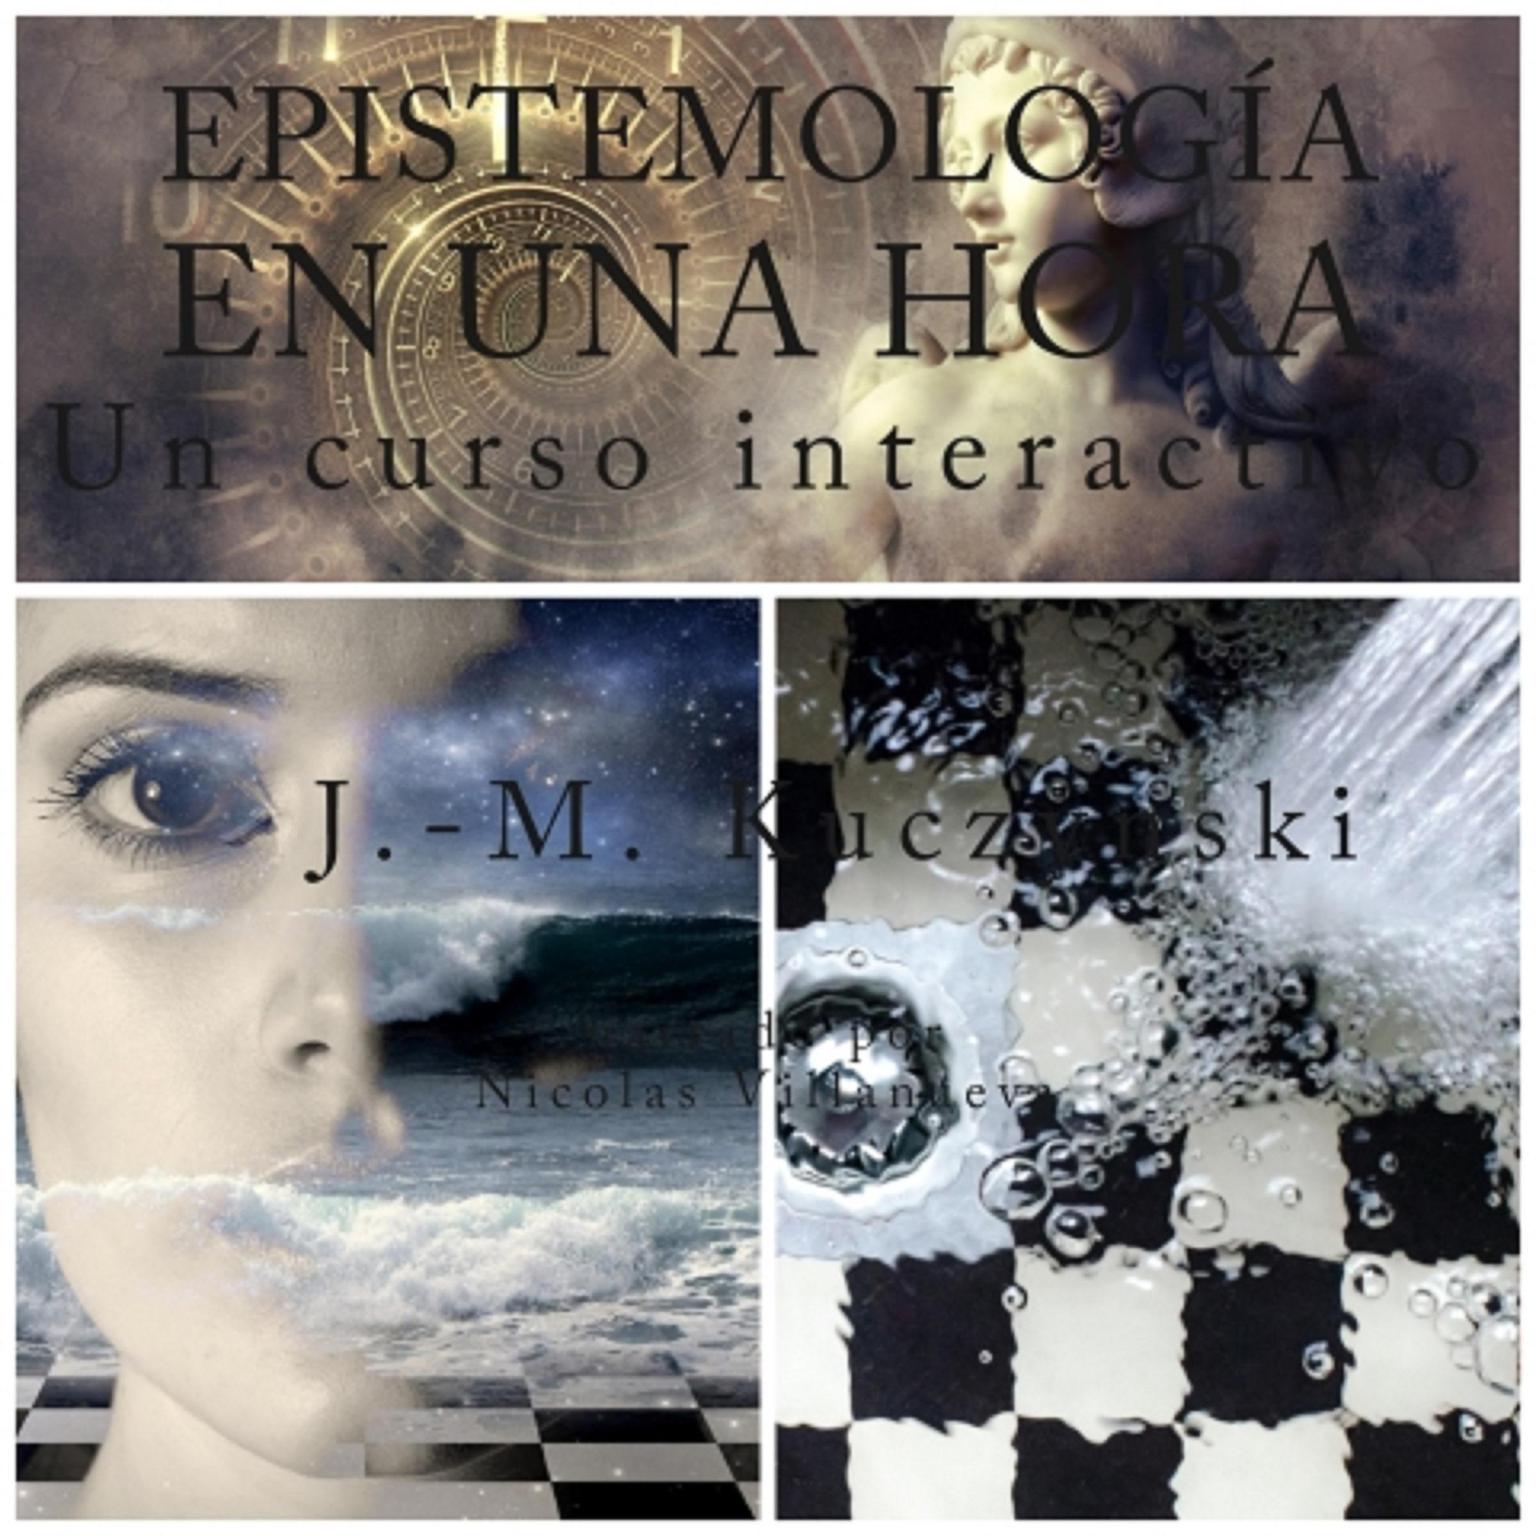 Epistemología en una hora: Un curso interactivo (Spanish Edition) Audiobook, by John-Michael Kuczynski